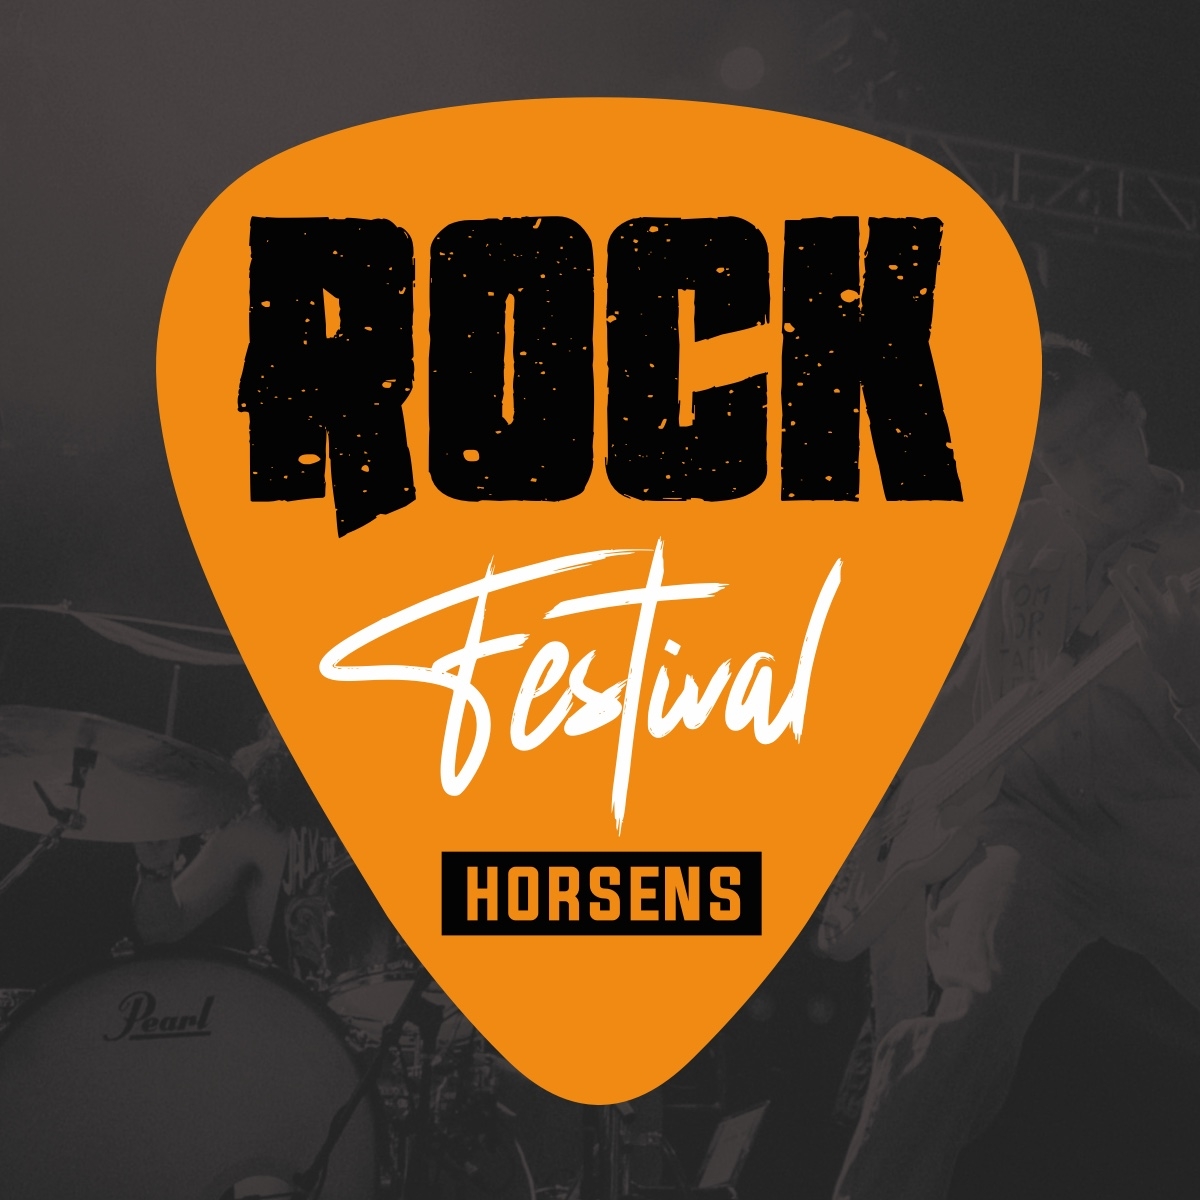 Rock Festival 2023